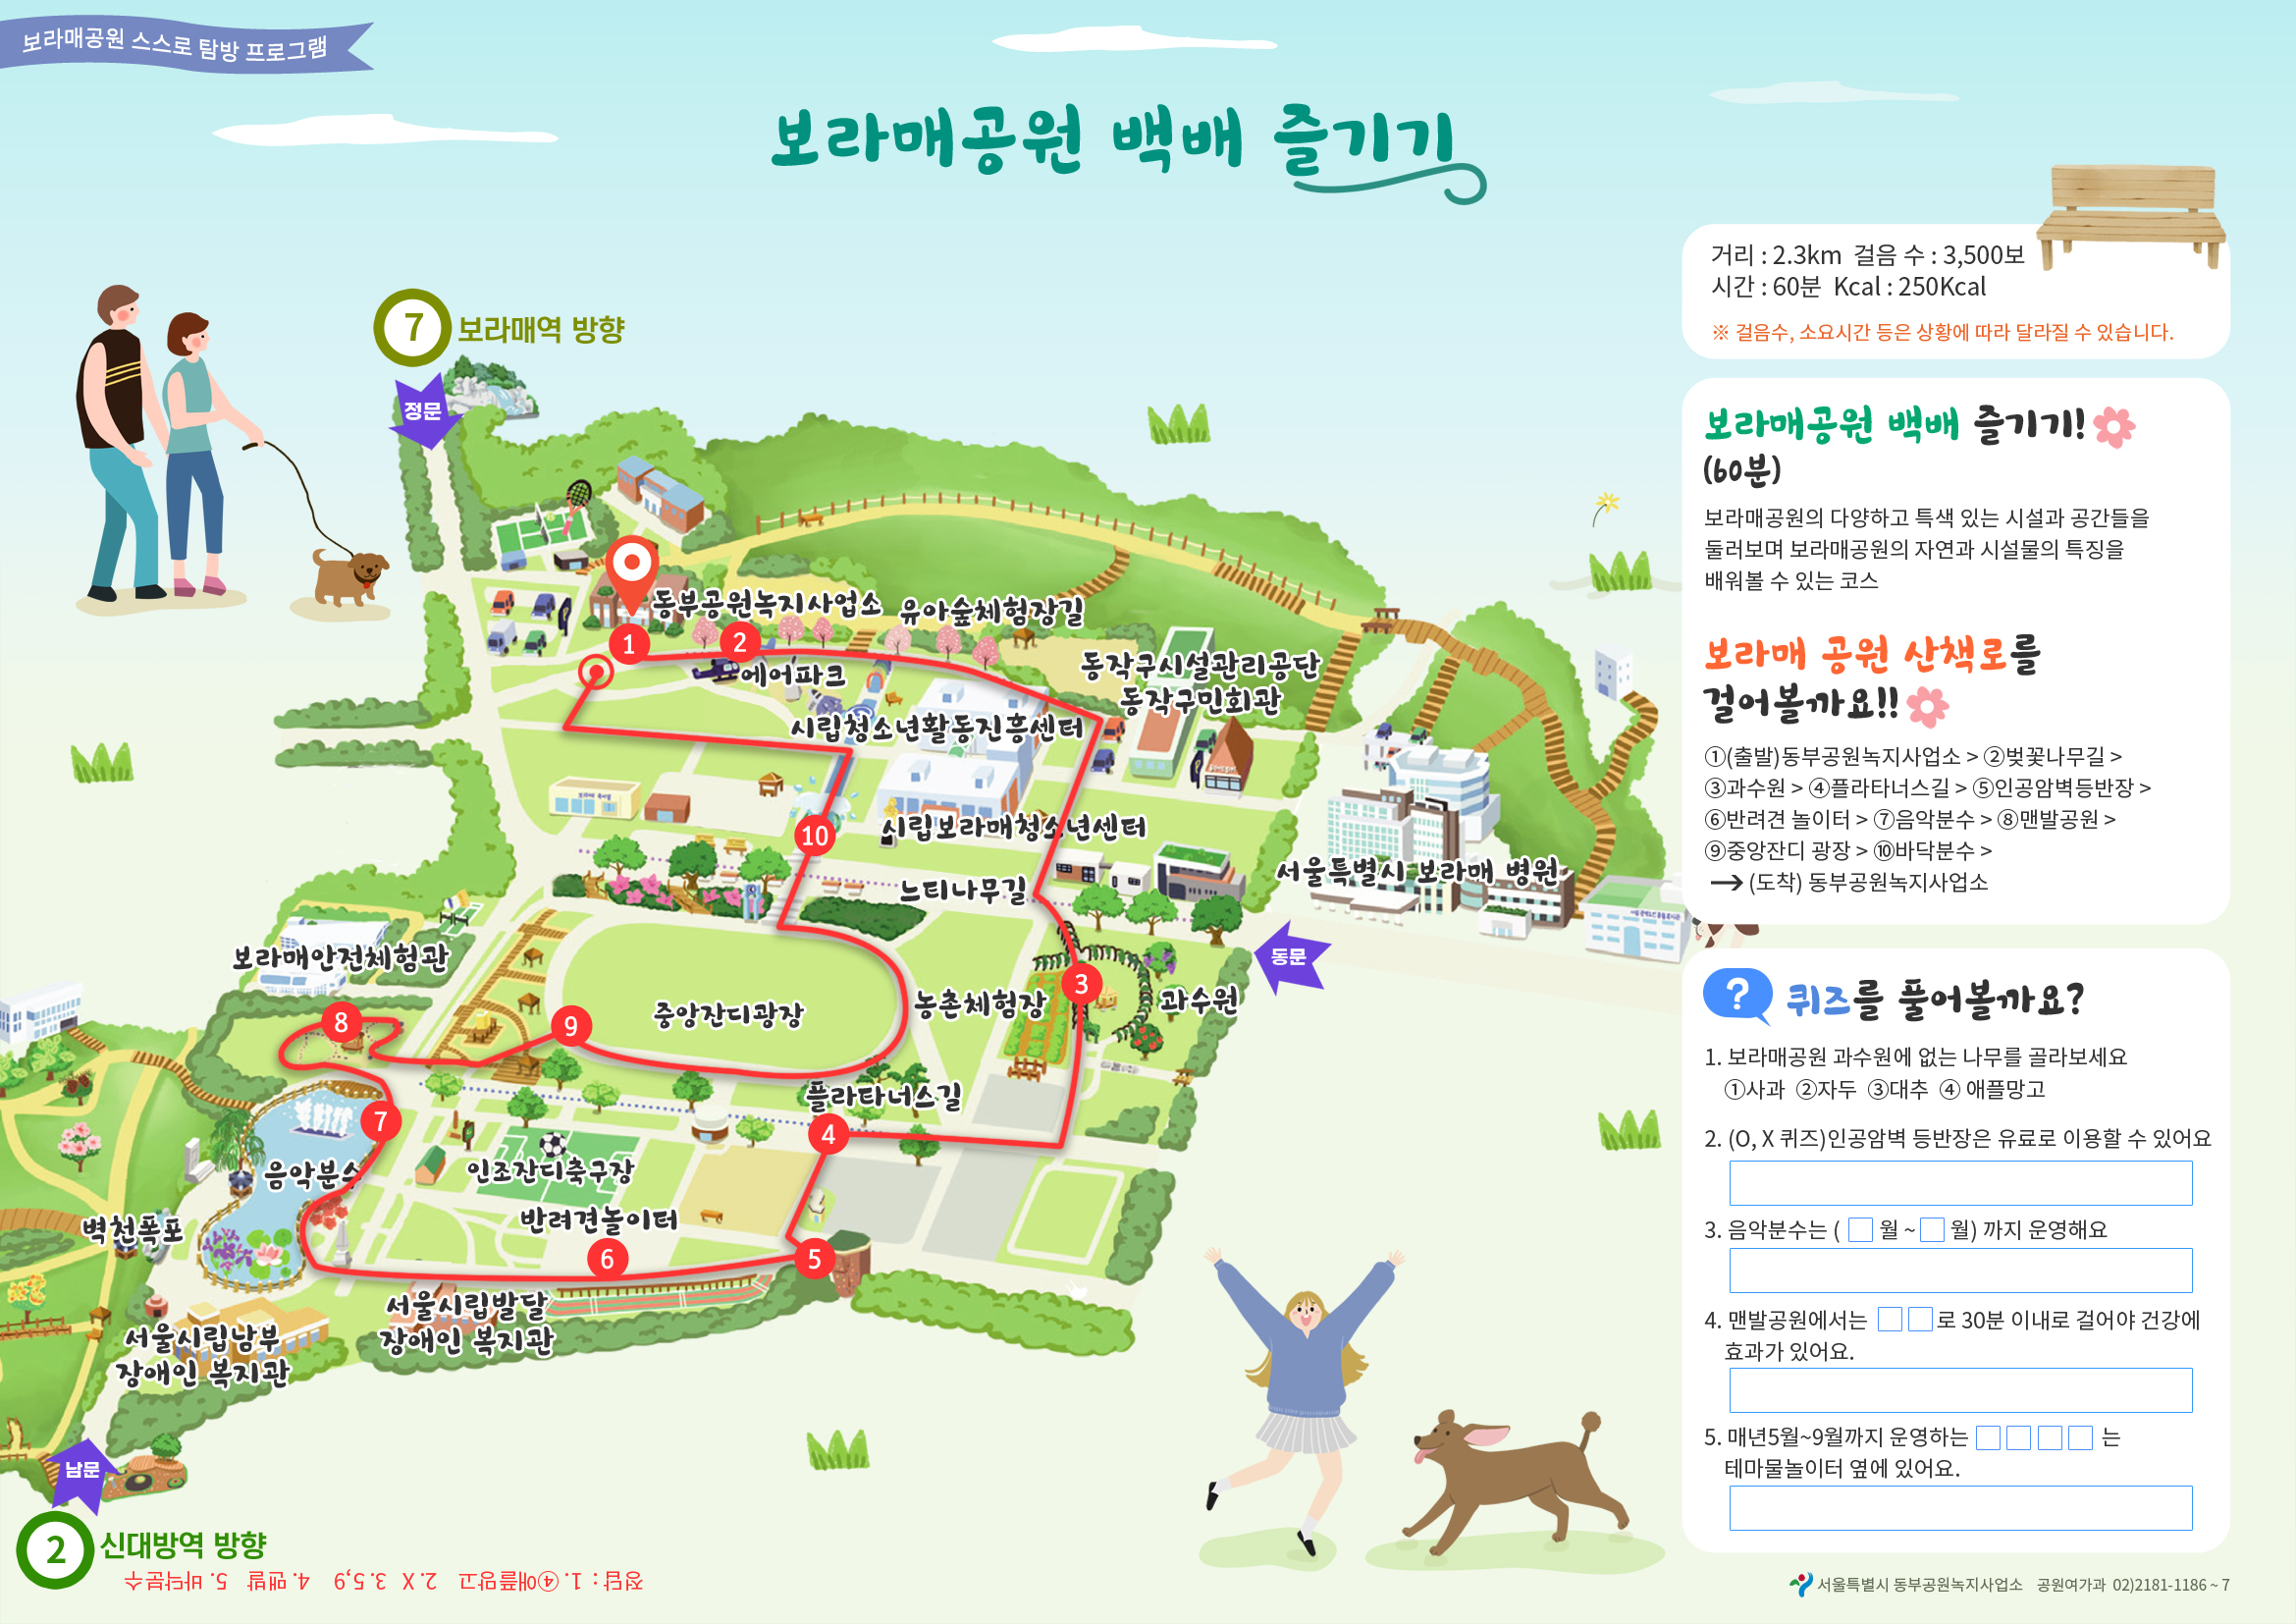 서울시는 보라매공원 등 시내 5개 공원에서 시민들이 자율적으로 공원을 체험할 수 있는 ‘스스로 공원탐방’ 프로그램을 운영한다. 서울시 제공